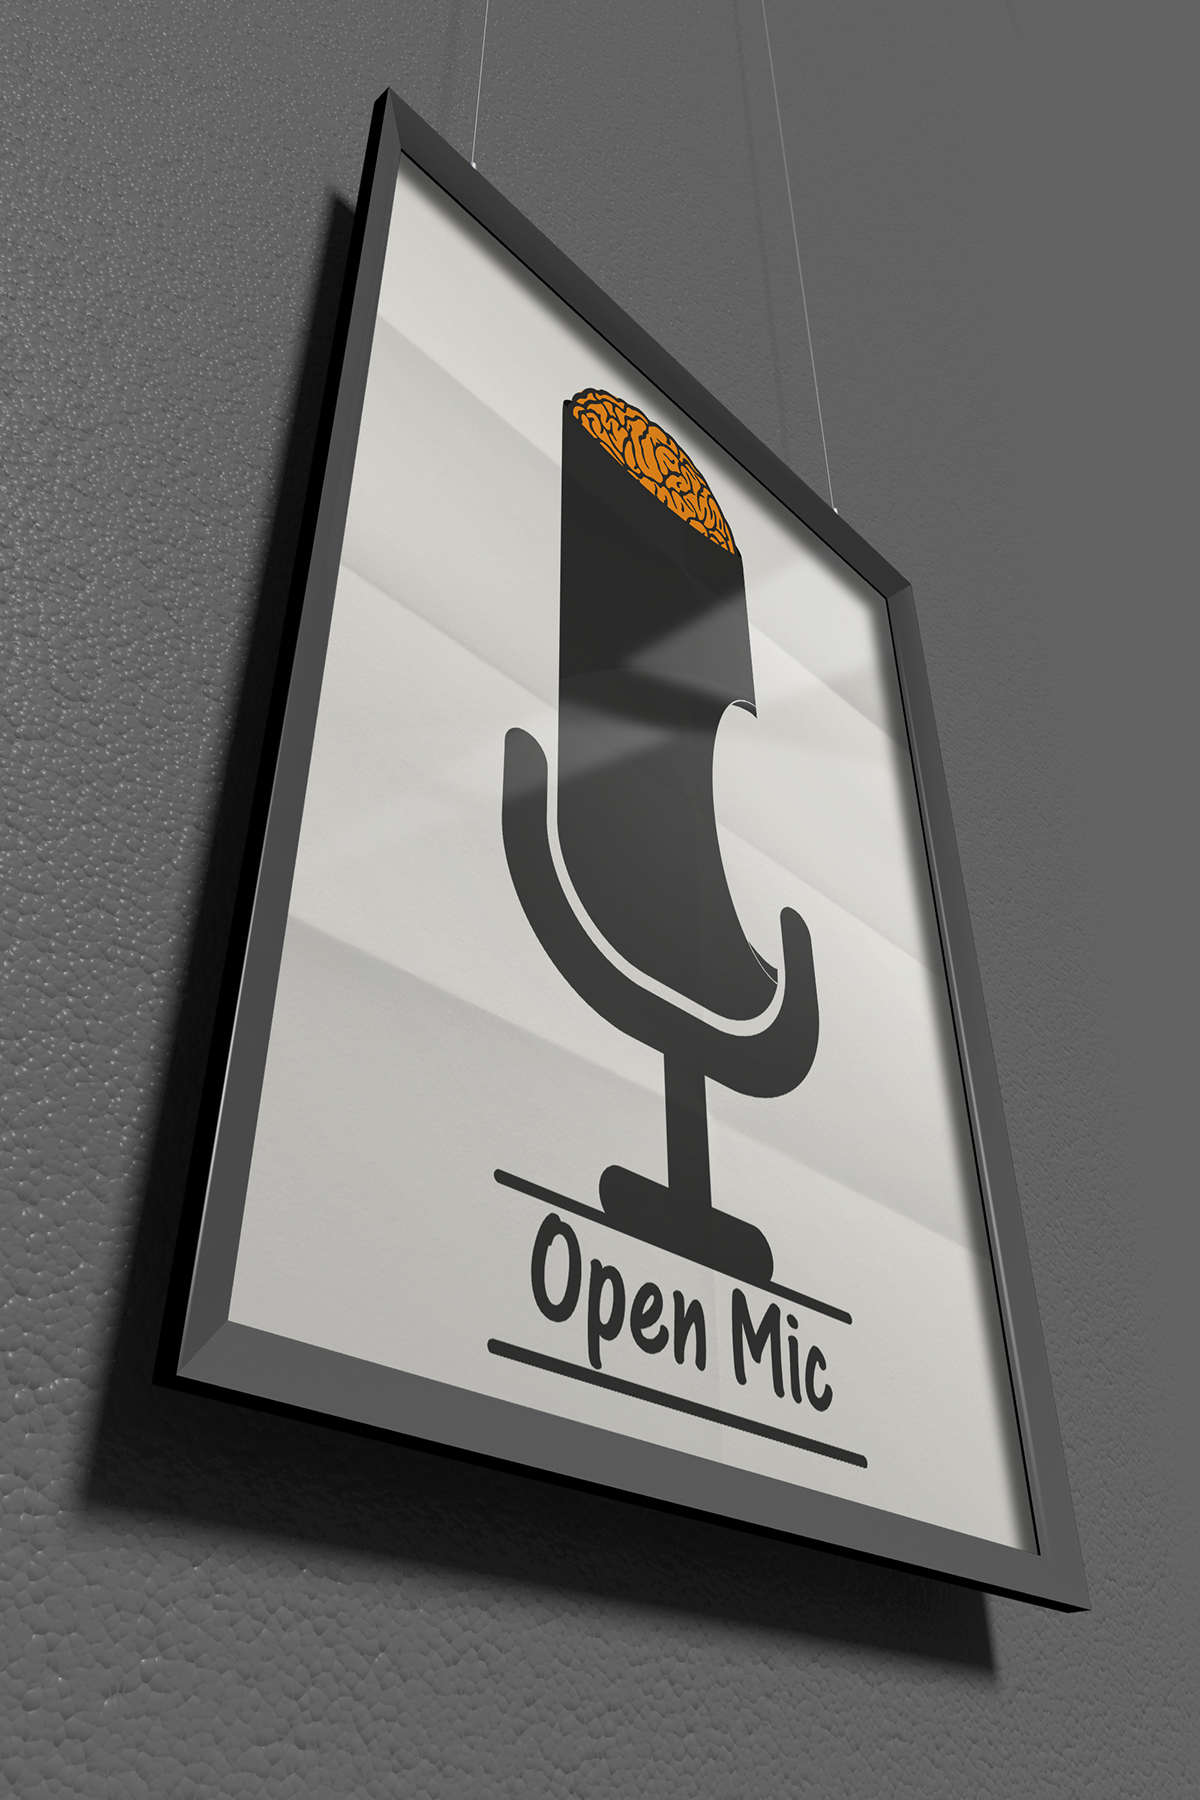 open mic Illustrator logo